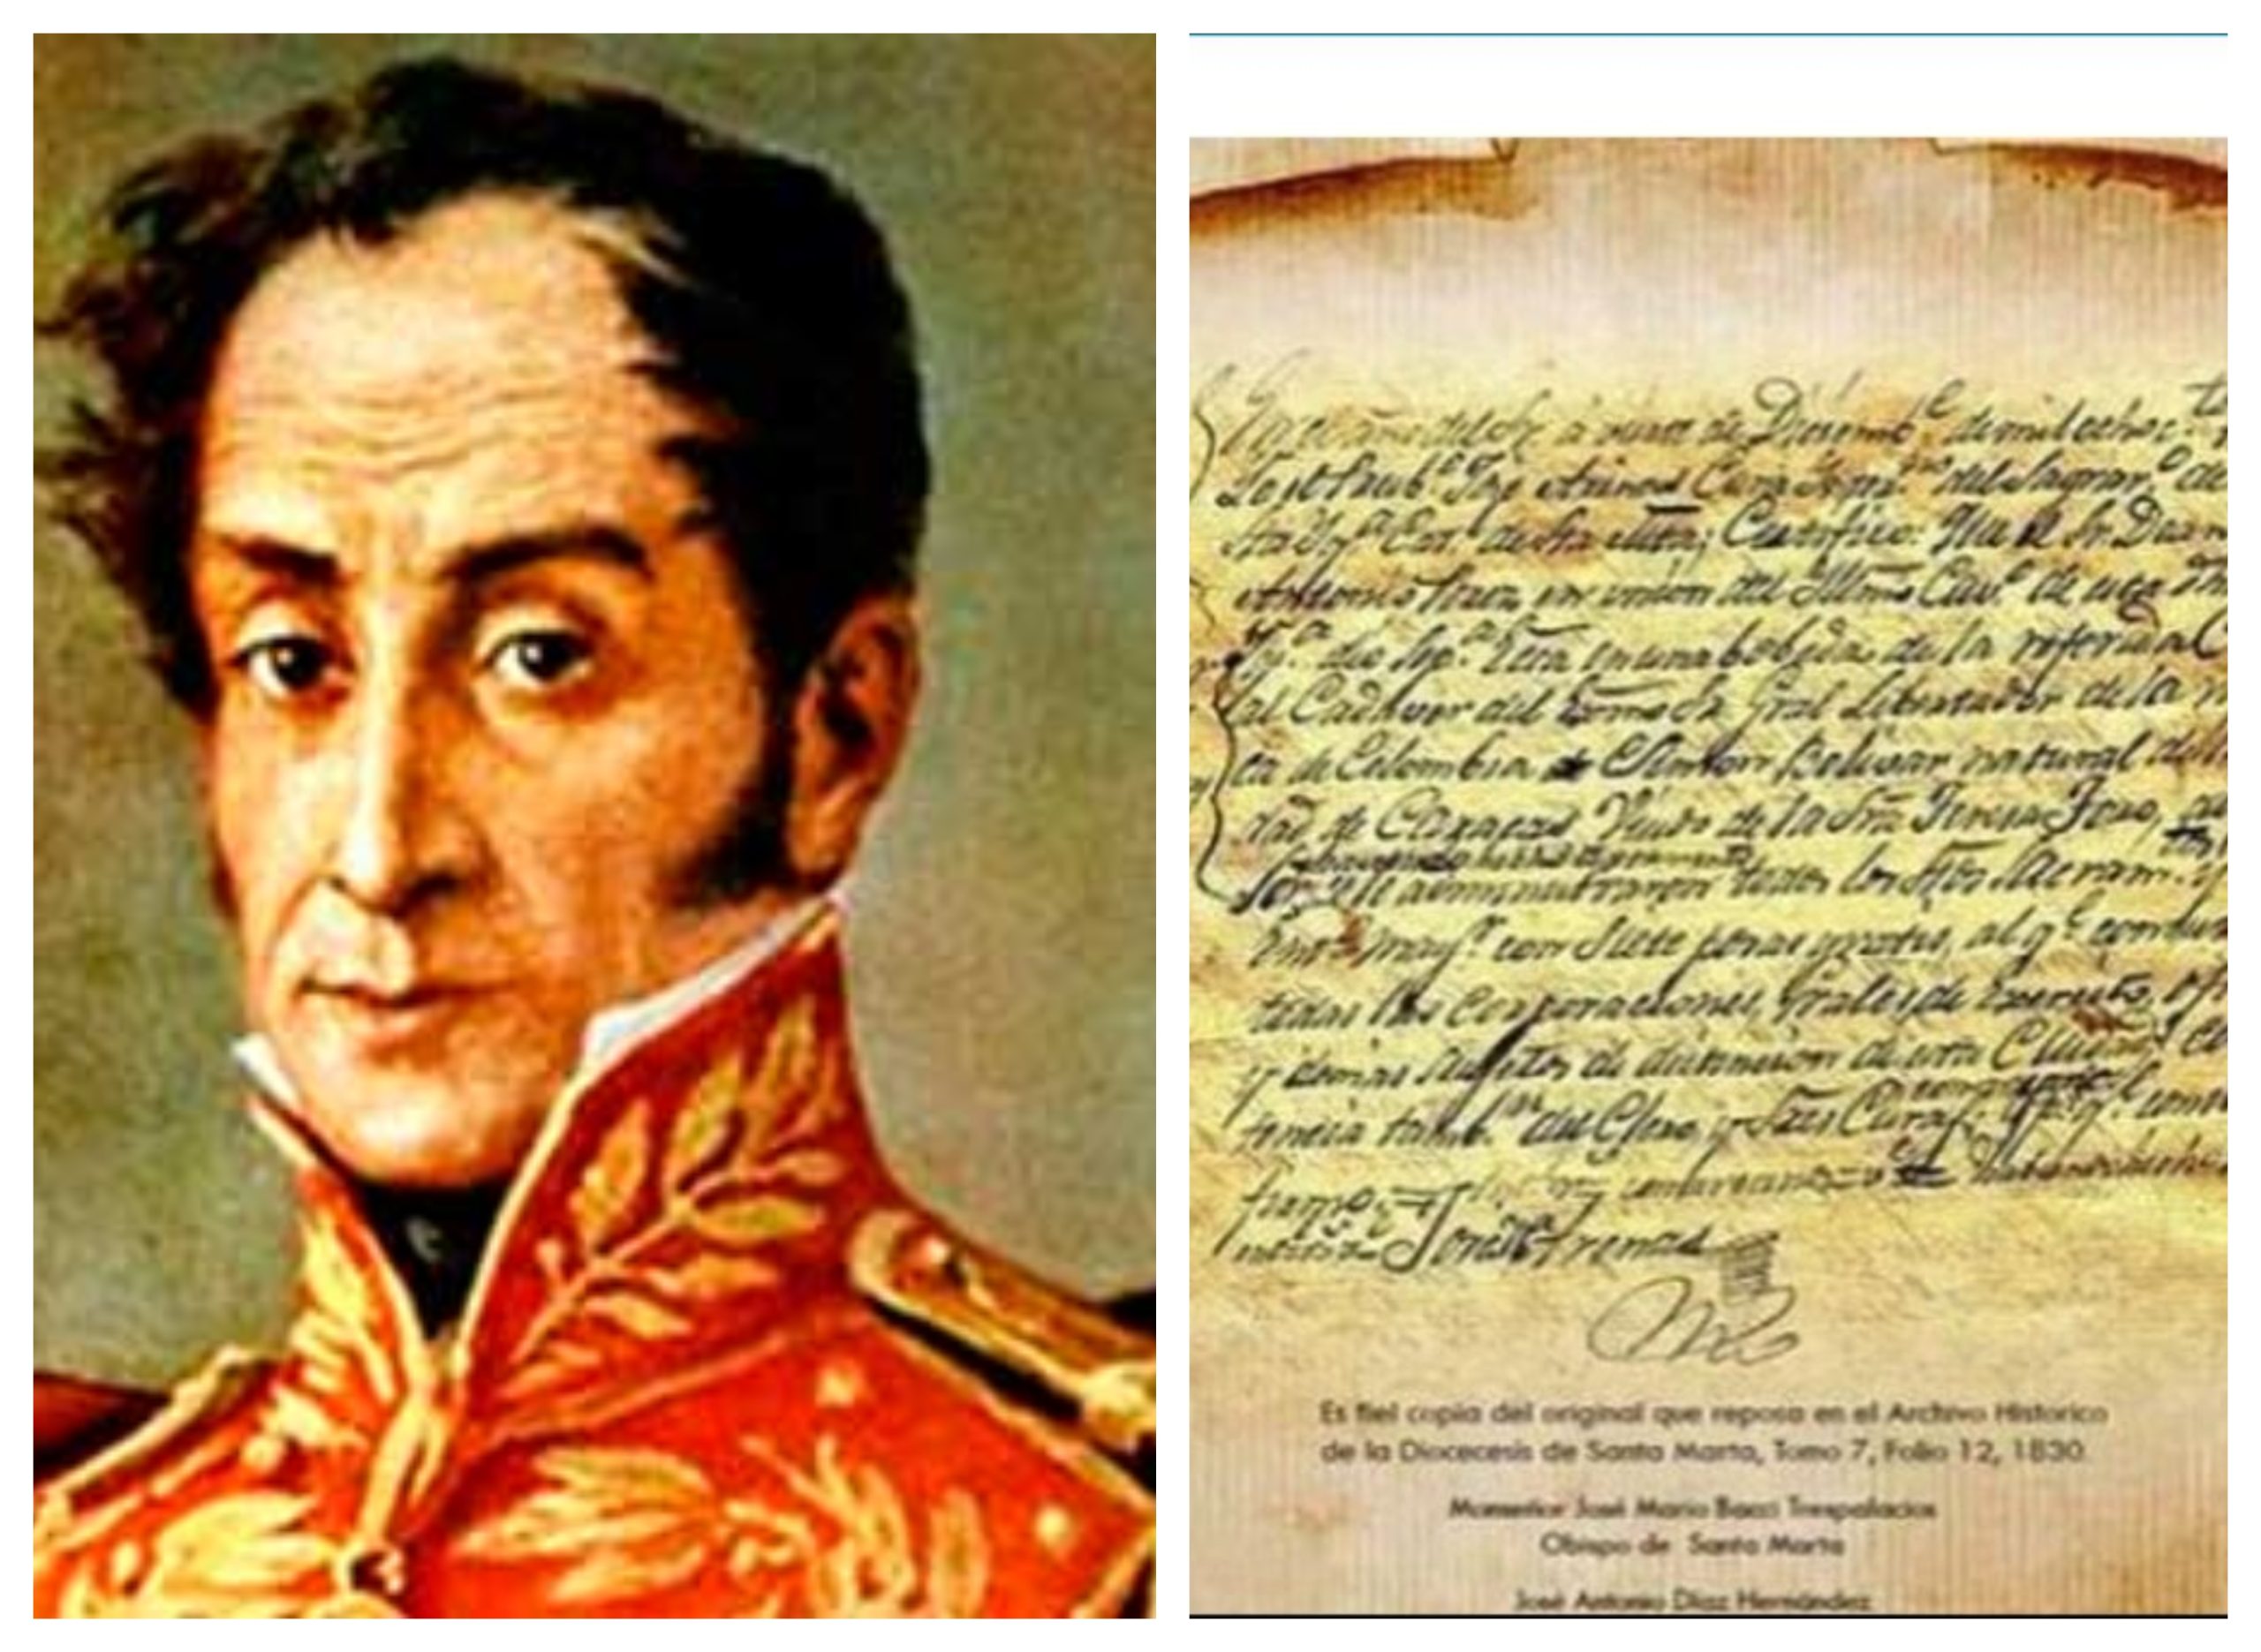 (Foto) Encuentran el acta de defunción de Simón Bolívar